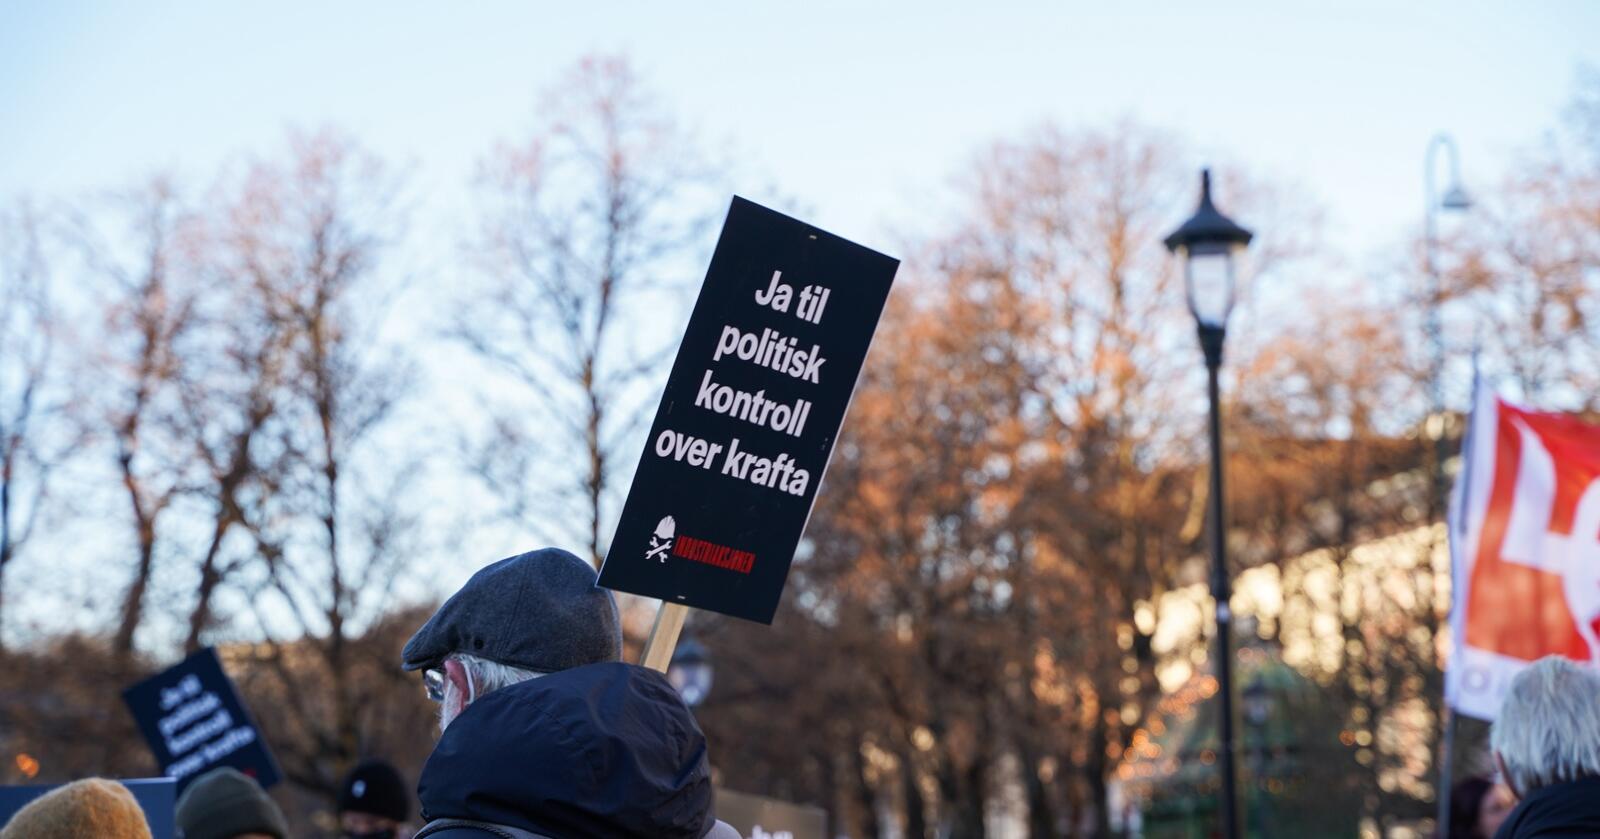 Her fra en demonstrasjon utenfor Stortinget. "Ja til politisk kontroll over krafta". Foto: Ingrid Godager